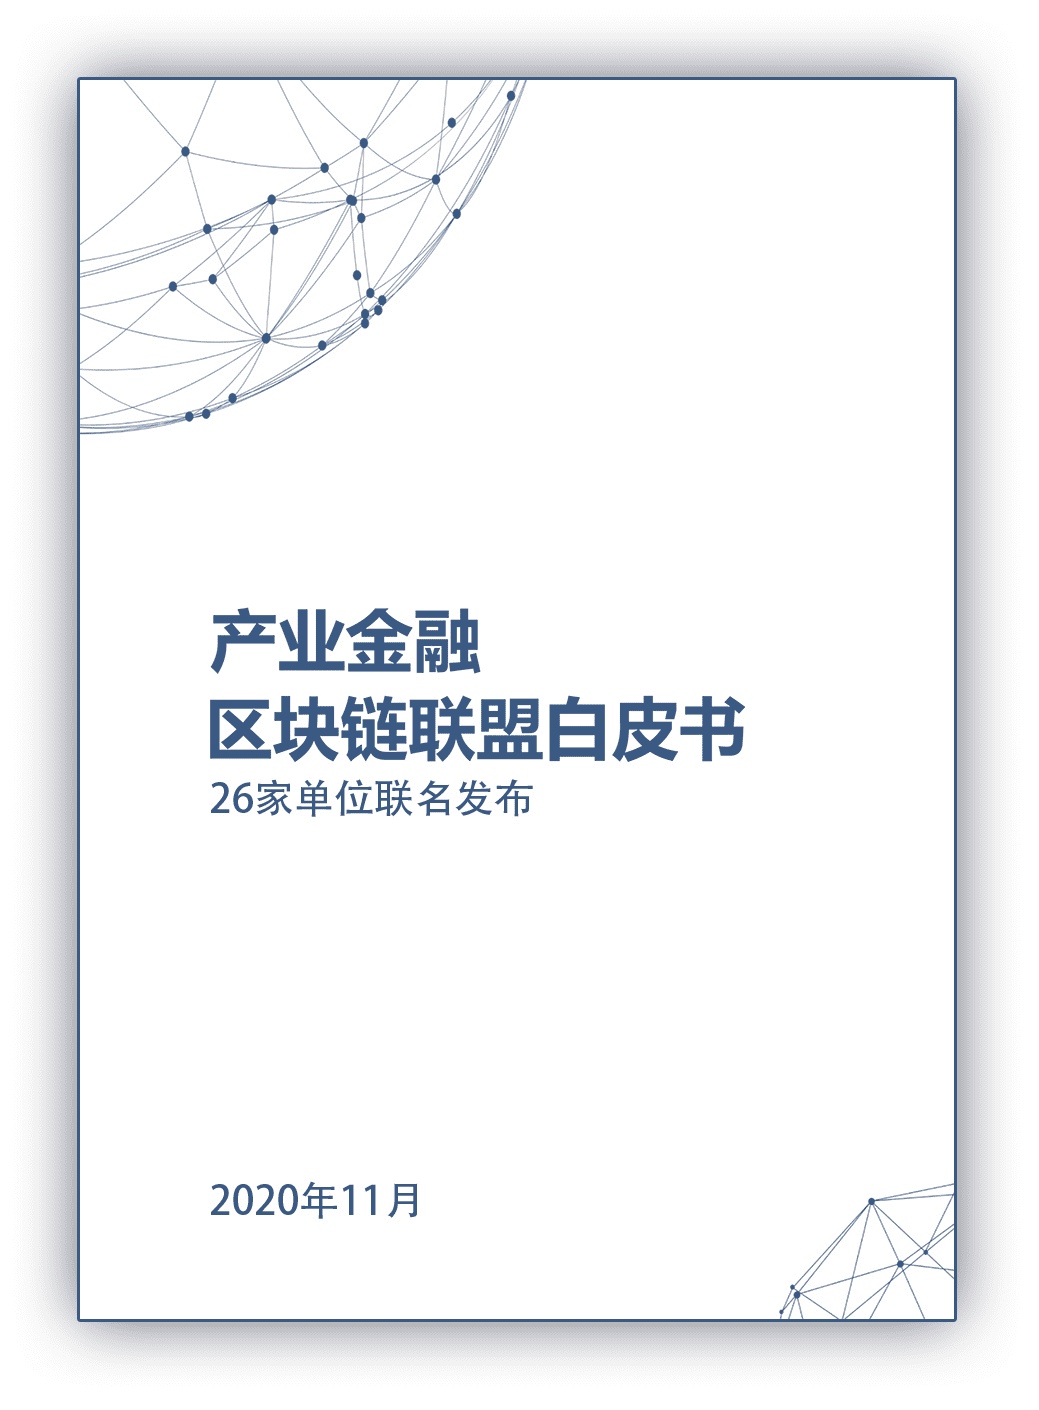 中国宝武联合多方共同发布《产业金融区块链联盟白皮书》